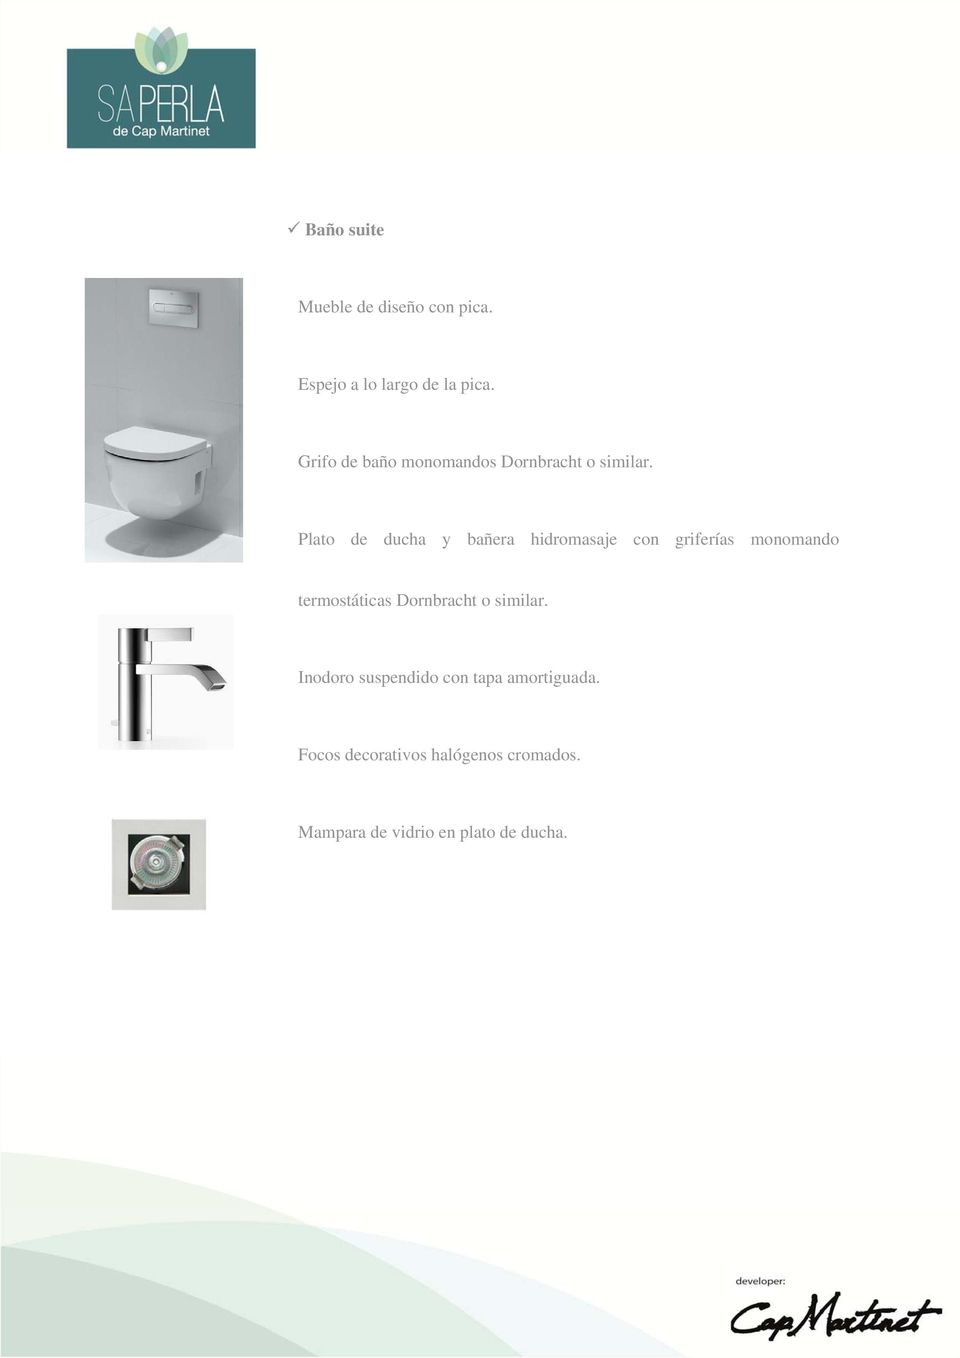 Plato de ducha y bañera hidromasaje con griferías monomando termostáticas